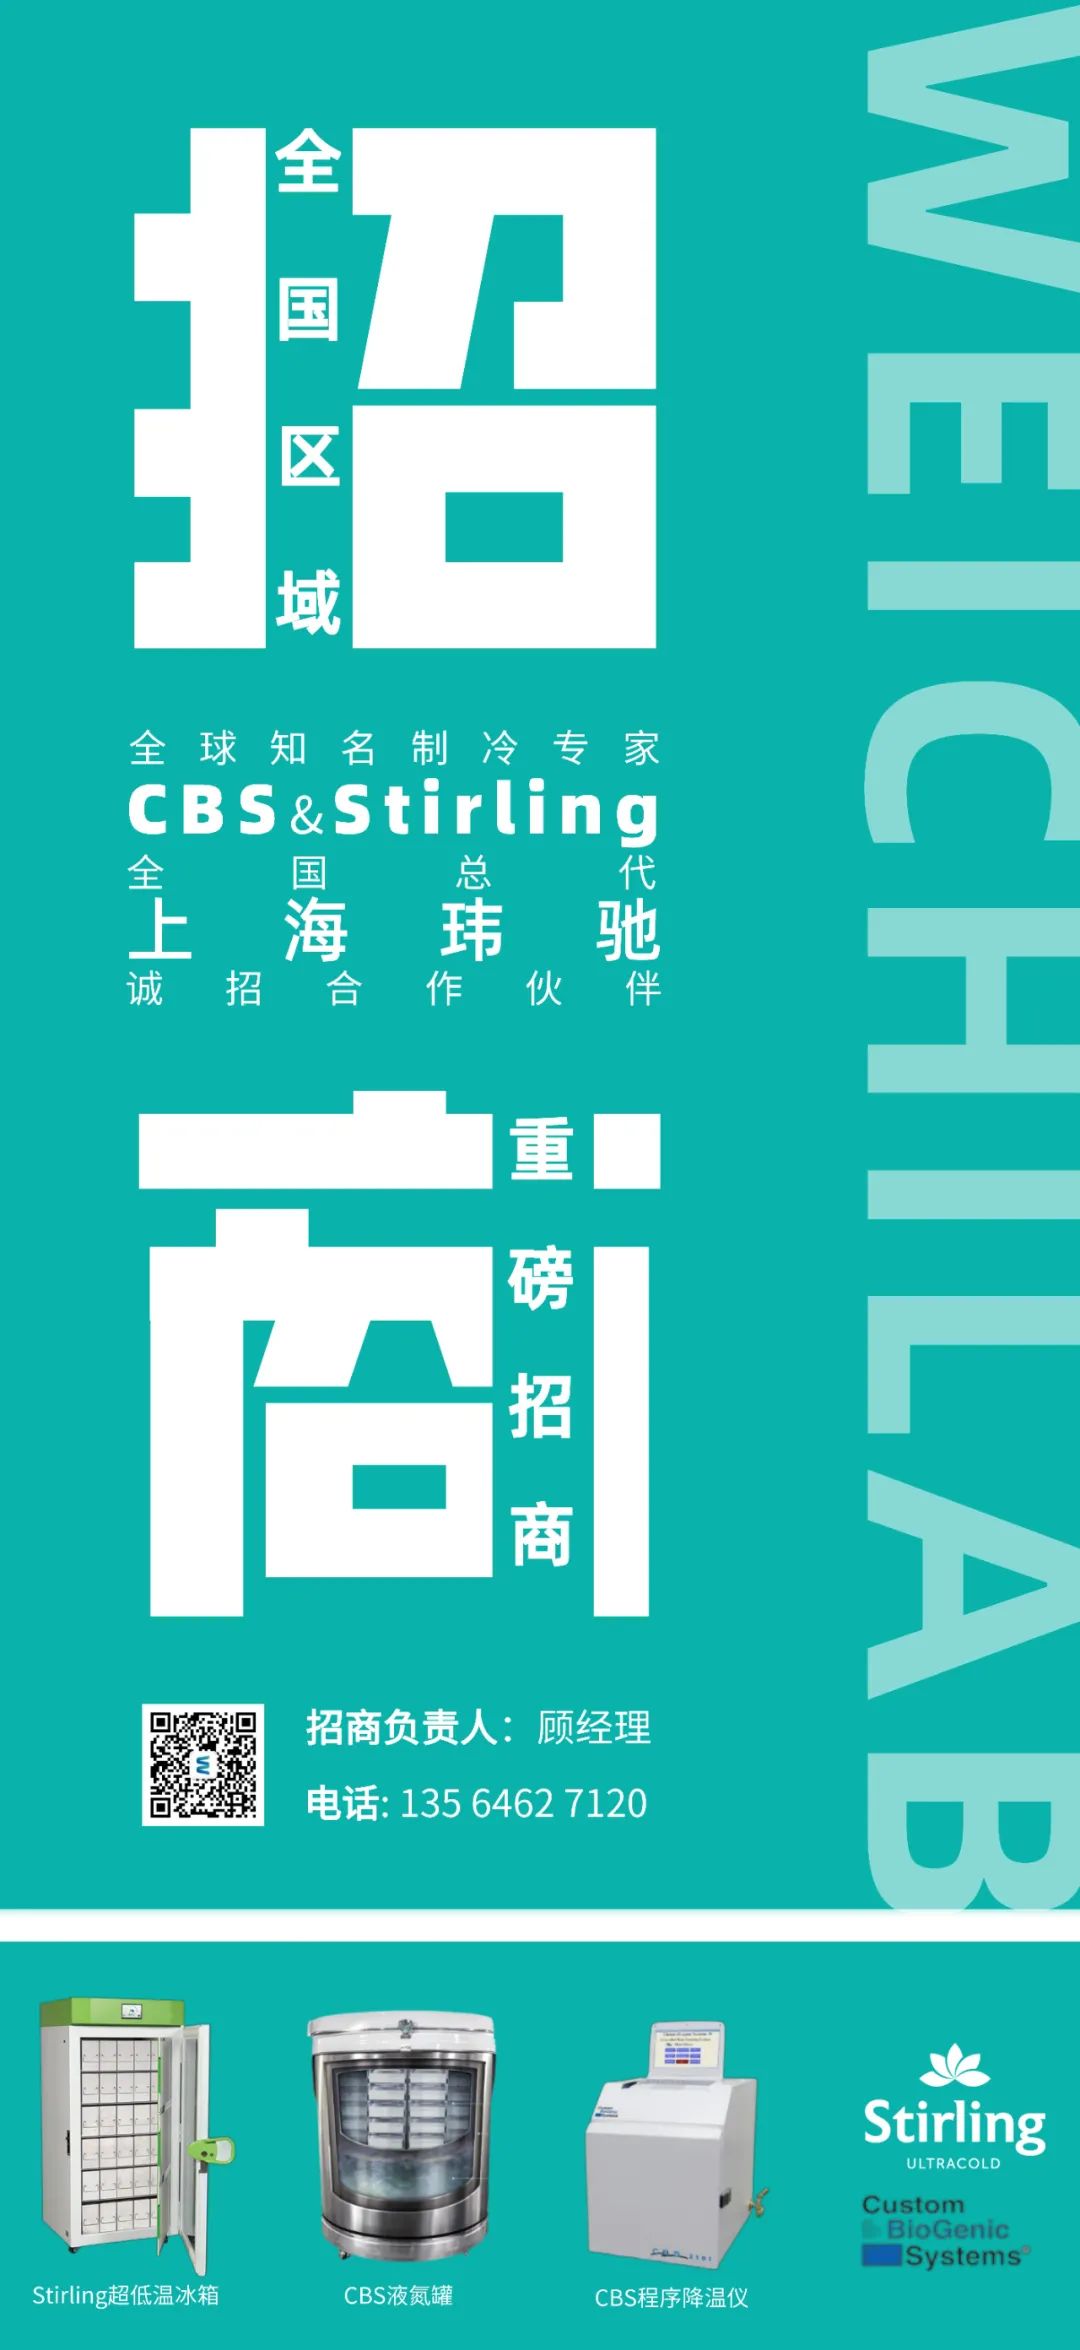 重磅招商丨CBS & Stirling 斯特林全国总代上海玮驰，诚招合作伙伴